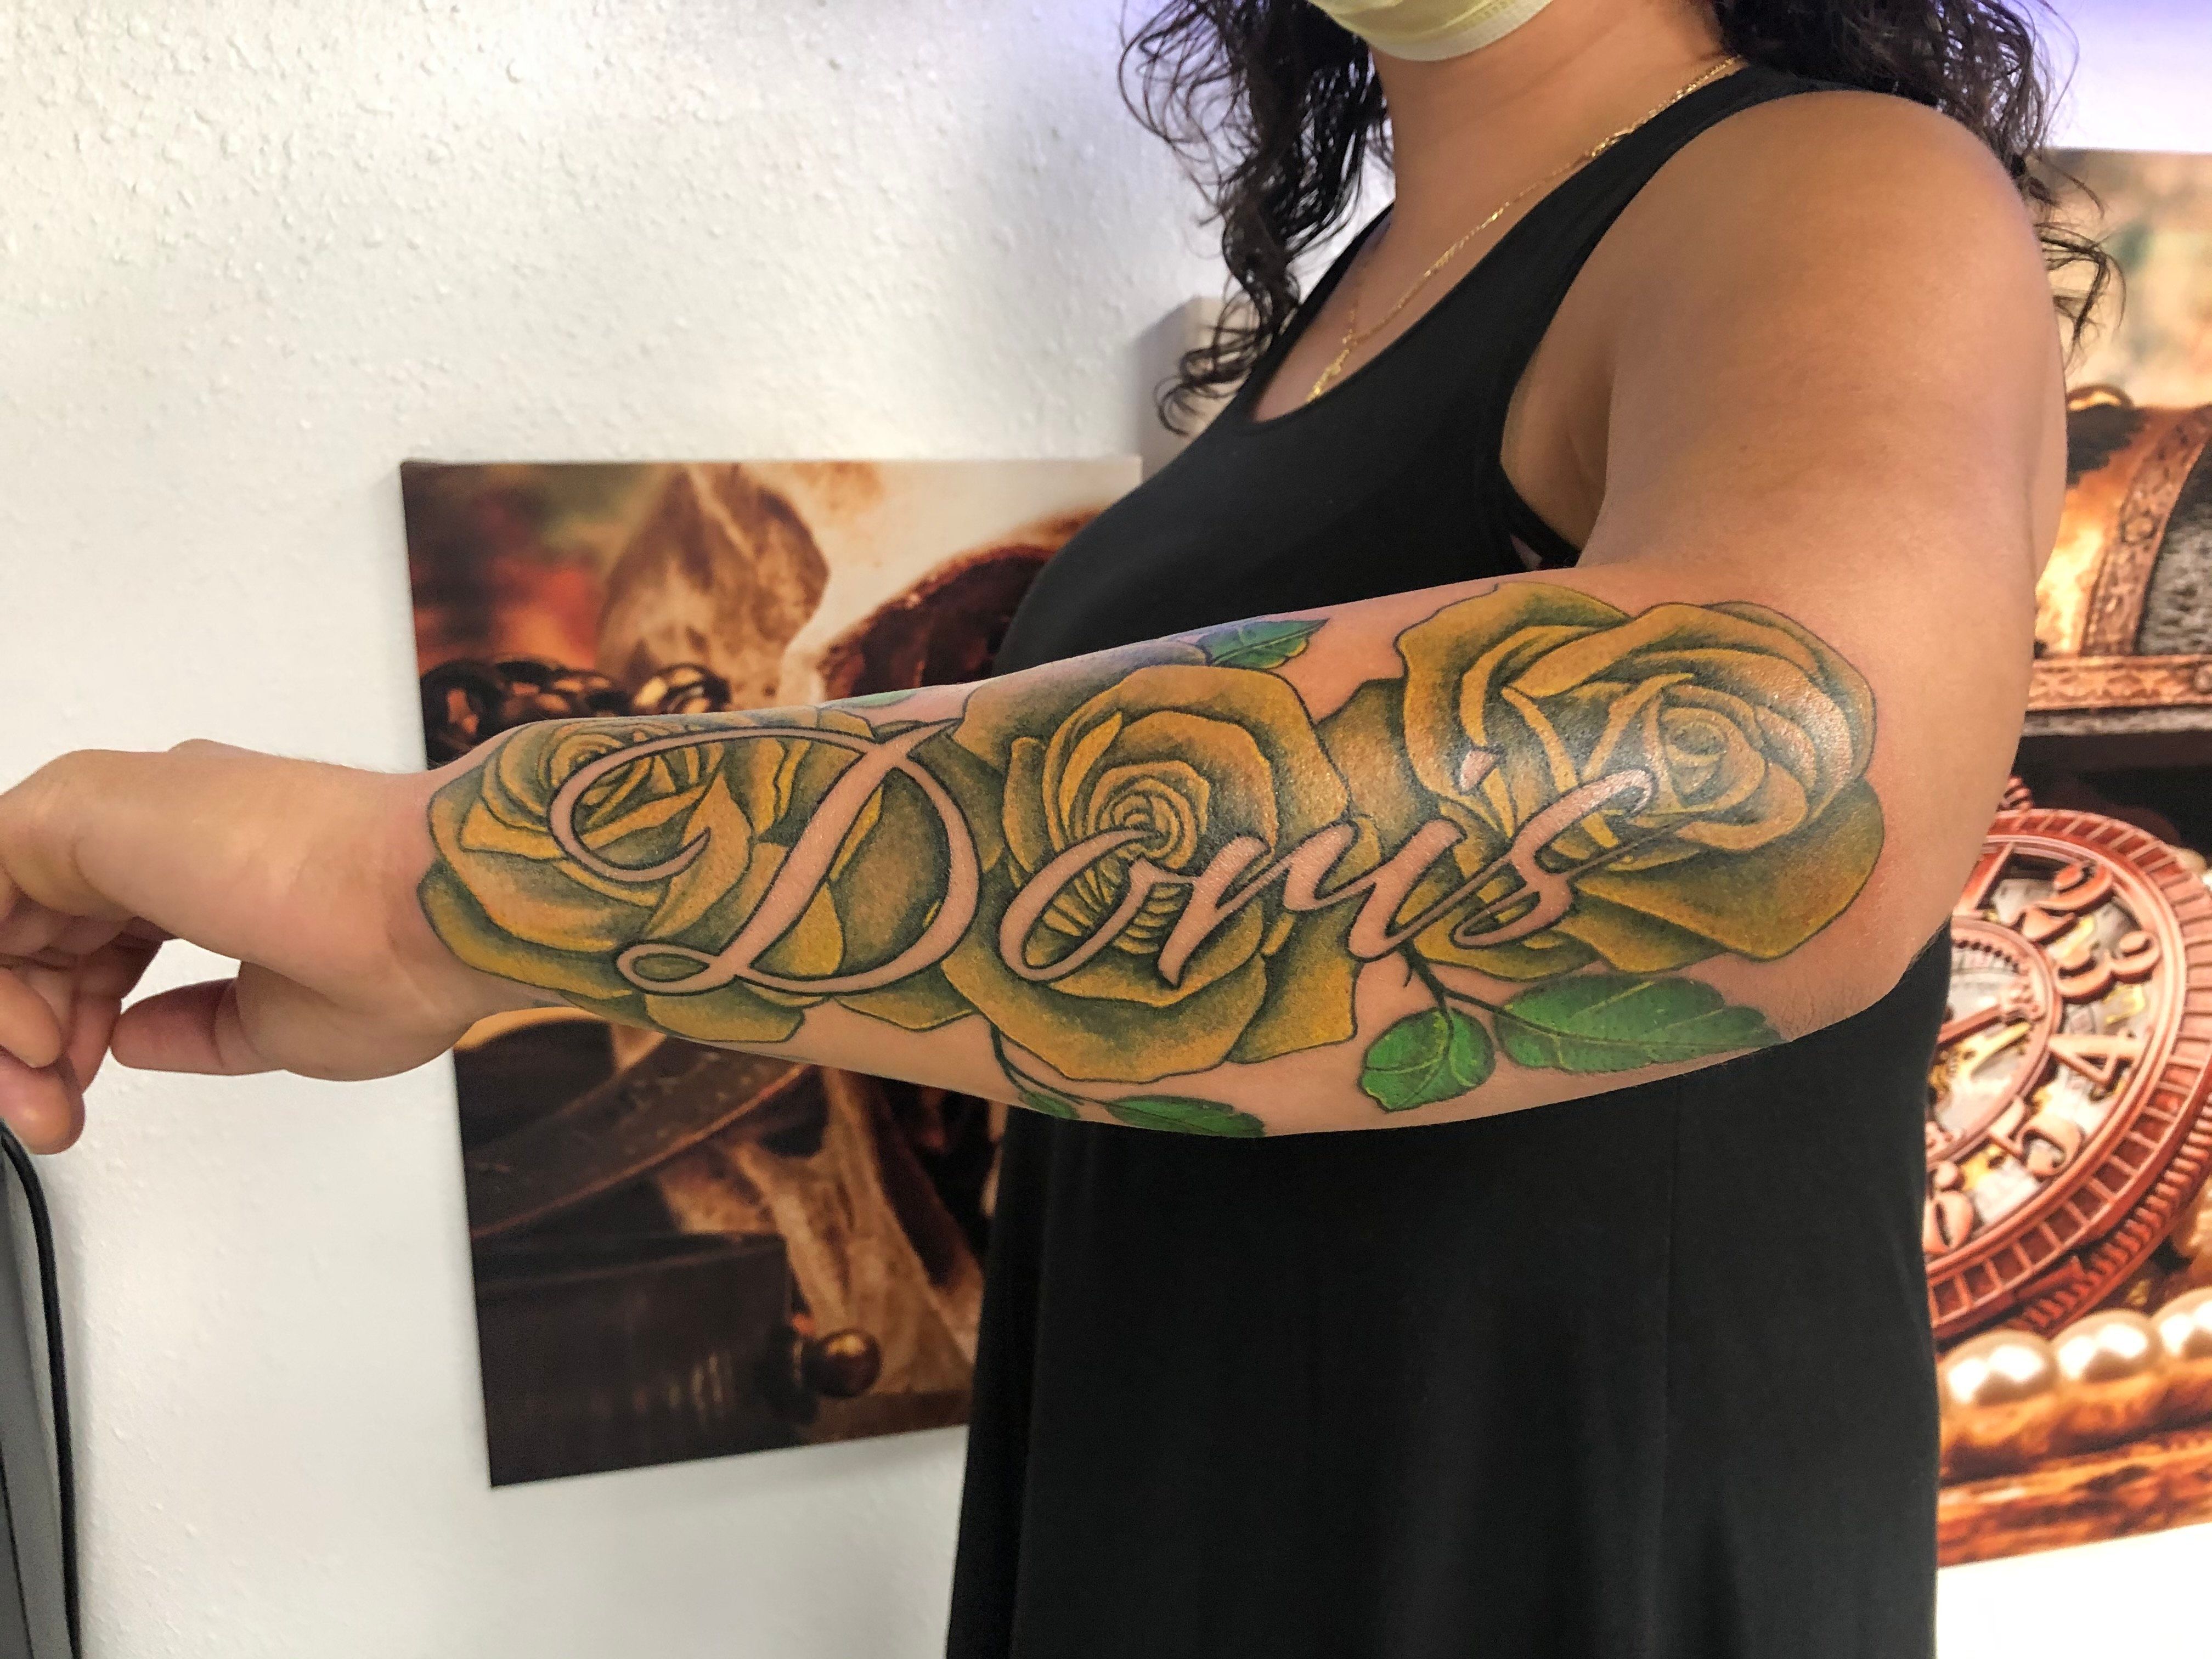 Doris Name Arm Tattoo